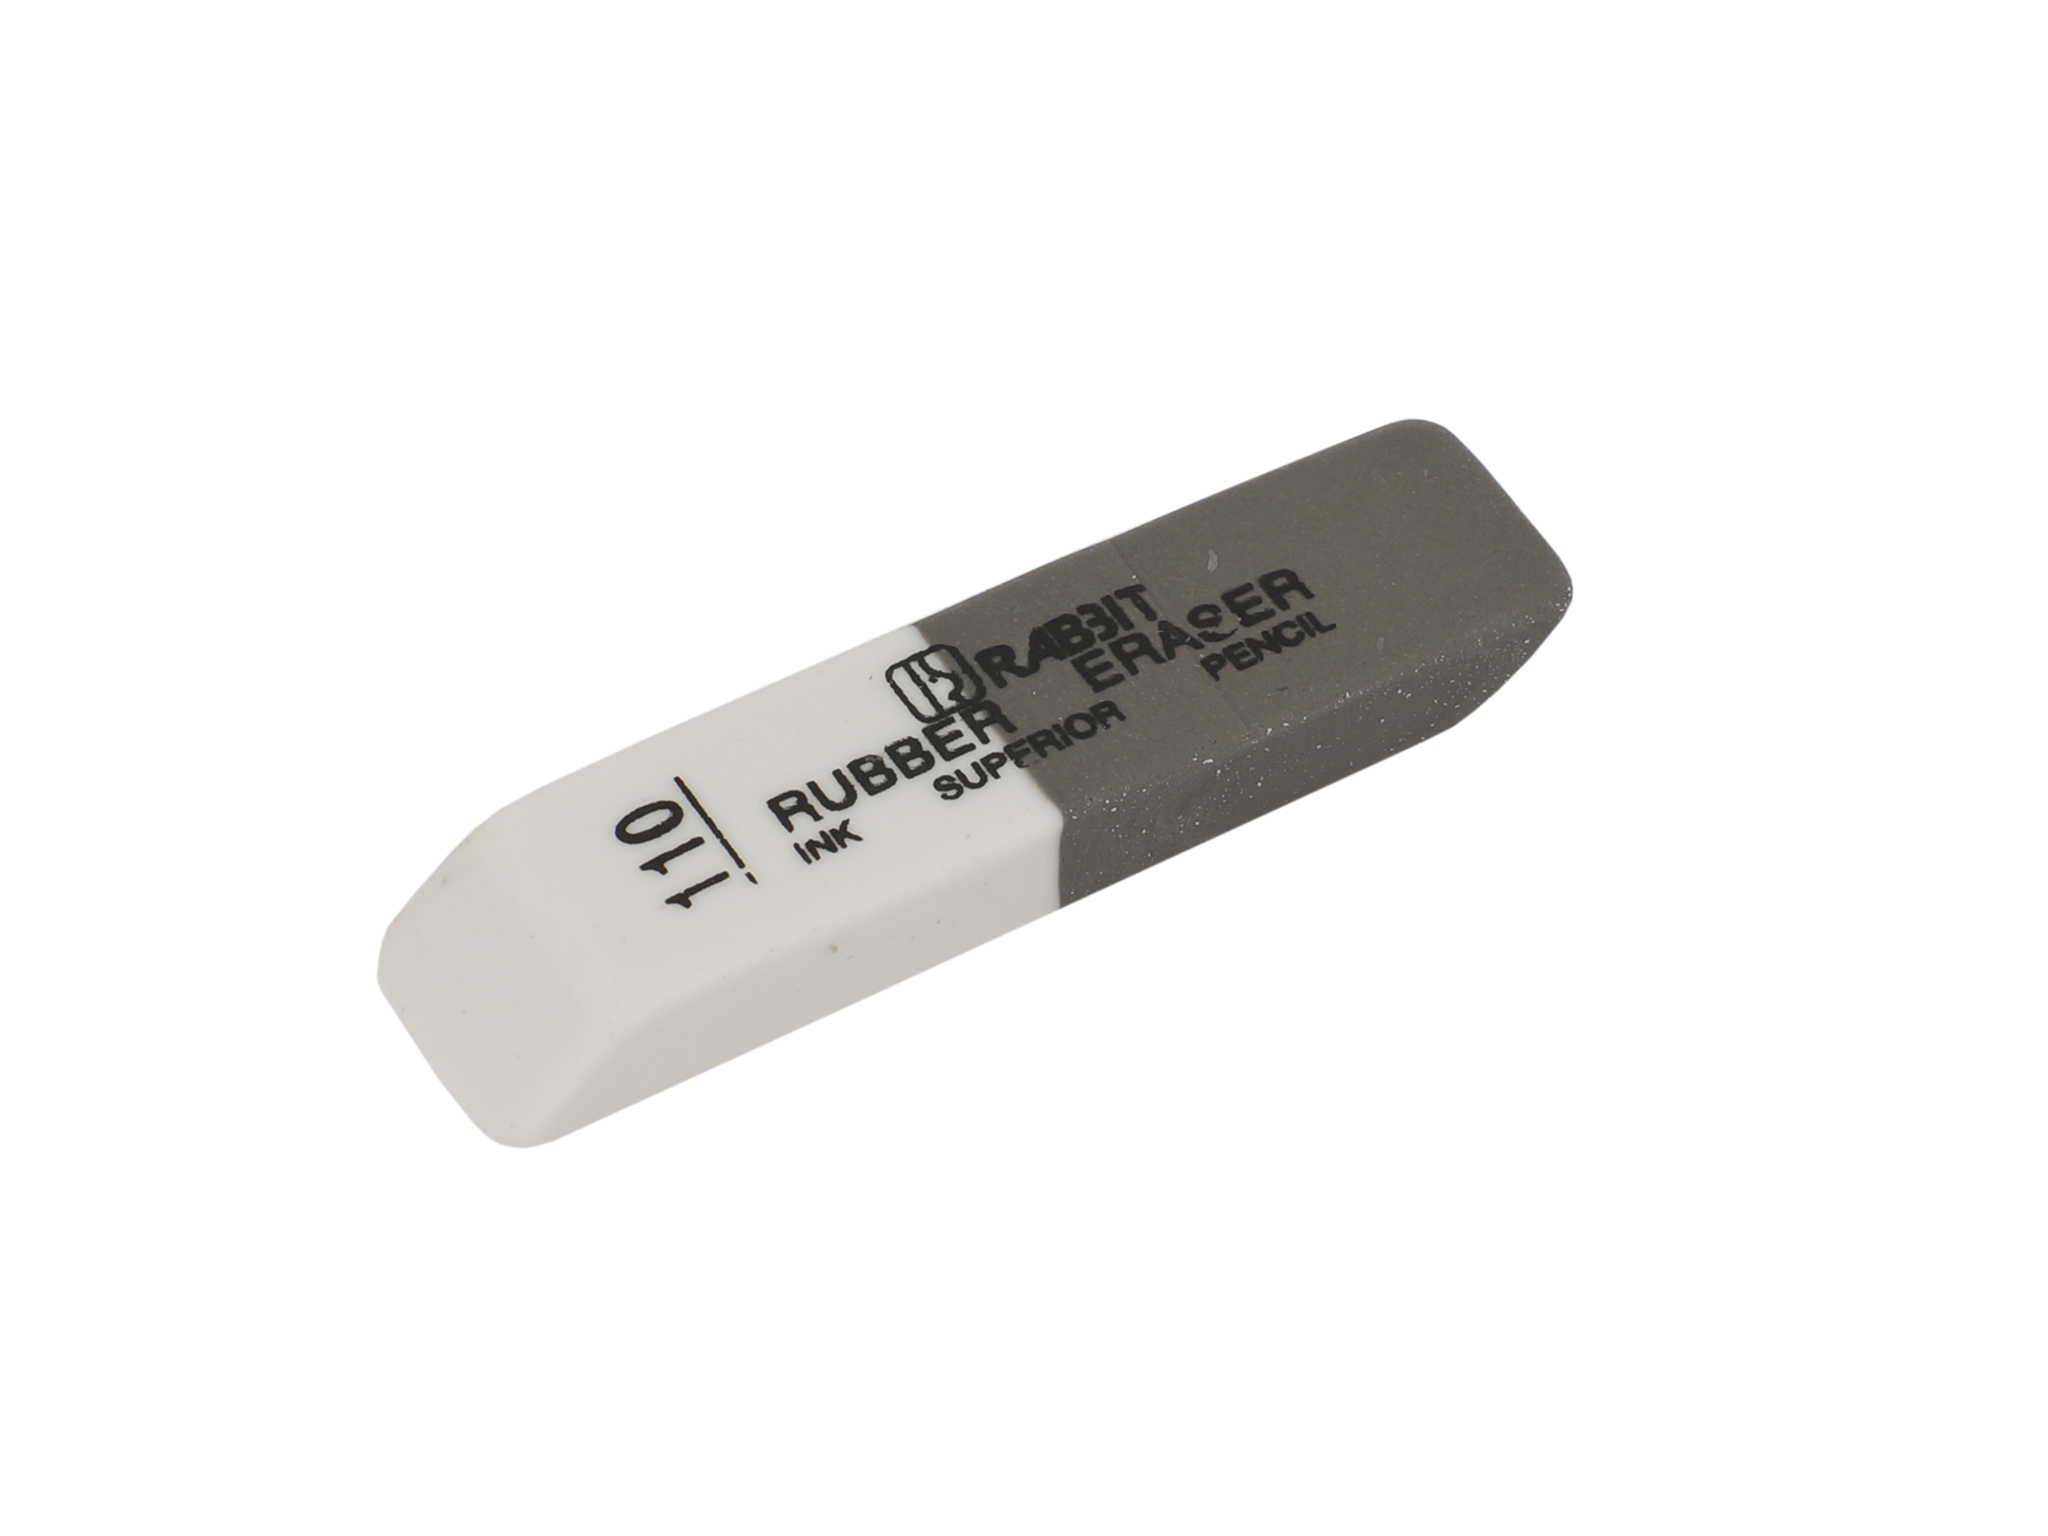 Ластик бело-серый 110 RABBIT Rubber Eraser. ST00020. Цена за 1 шт.